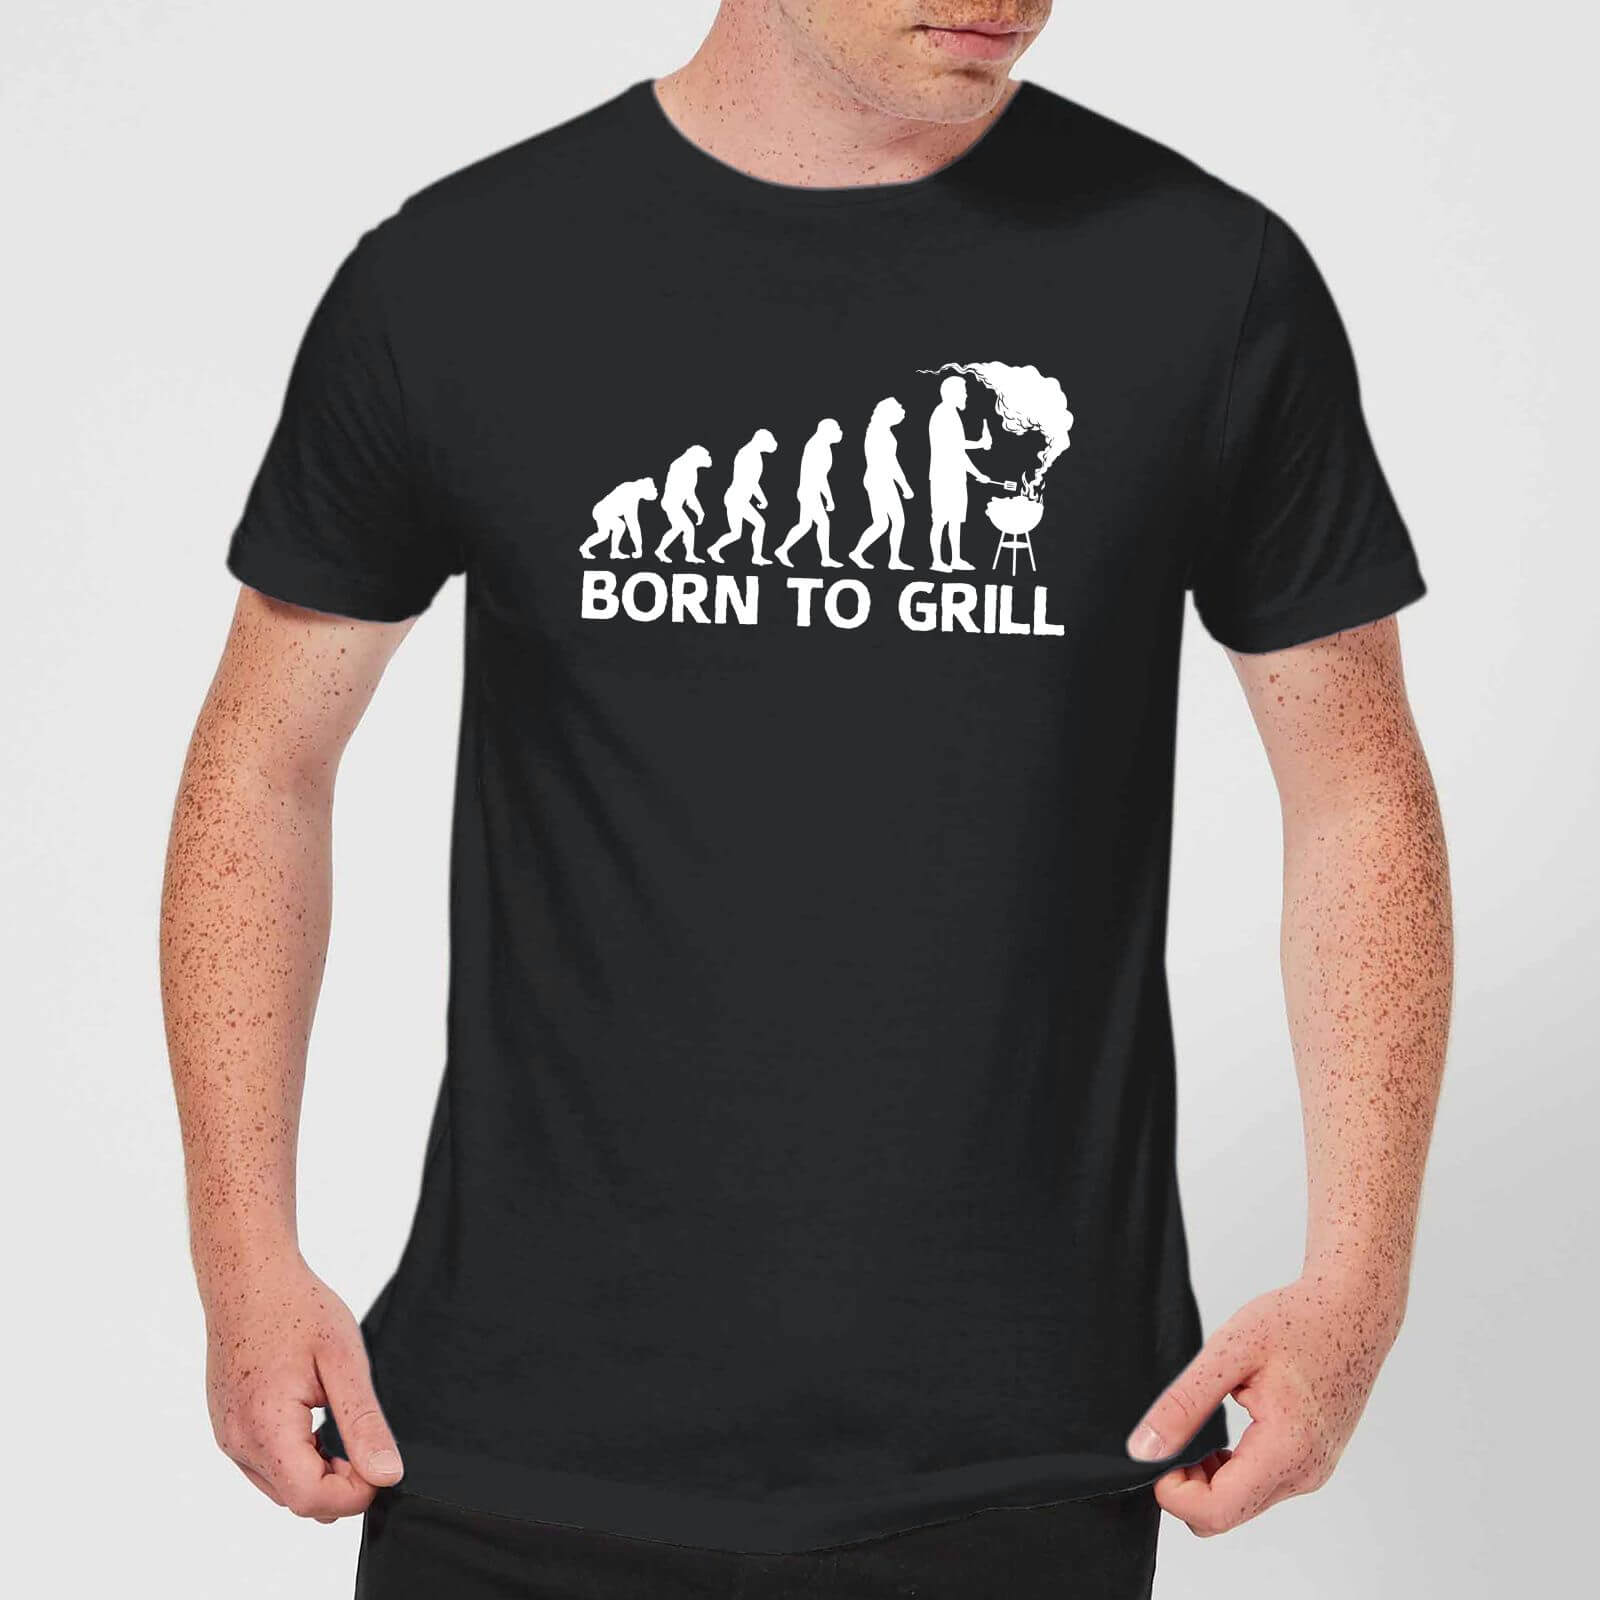 Born To Grill Men's T-Shirt - Black - S - Black